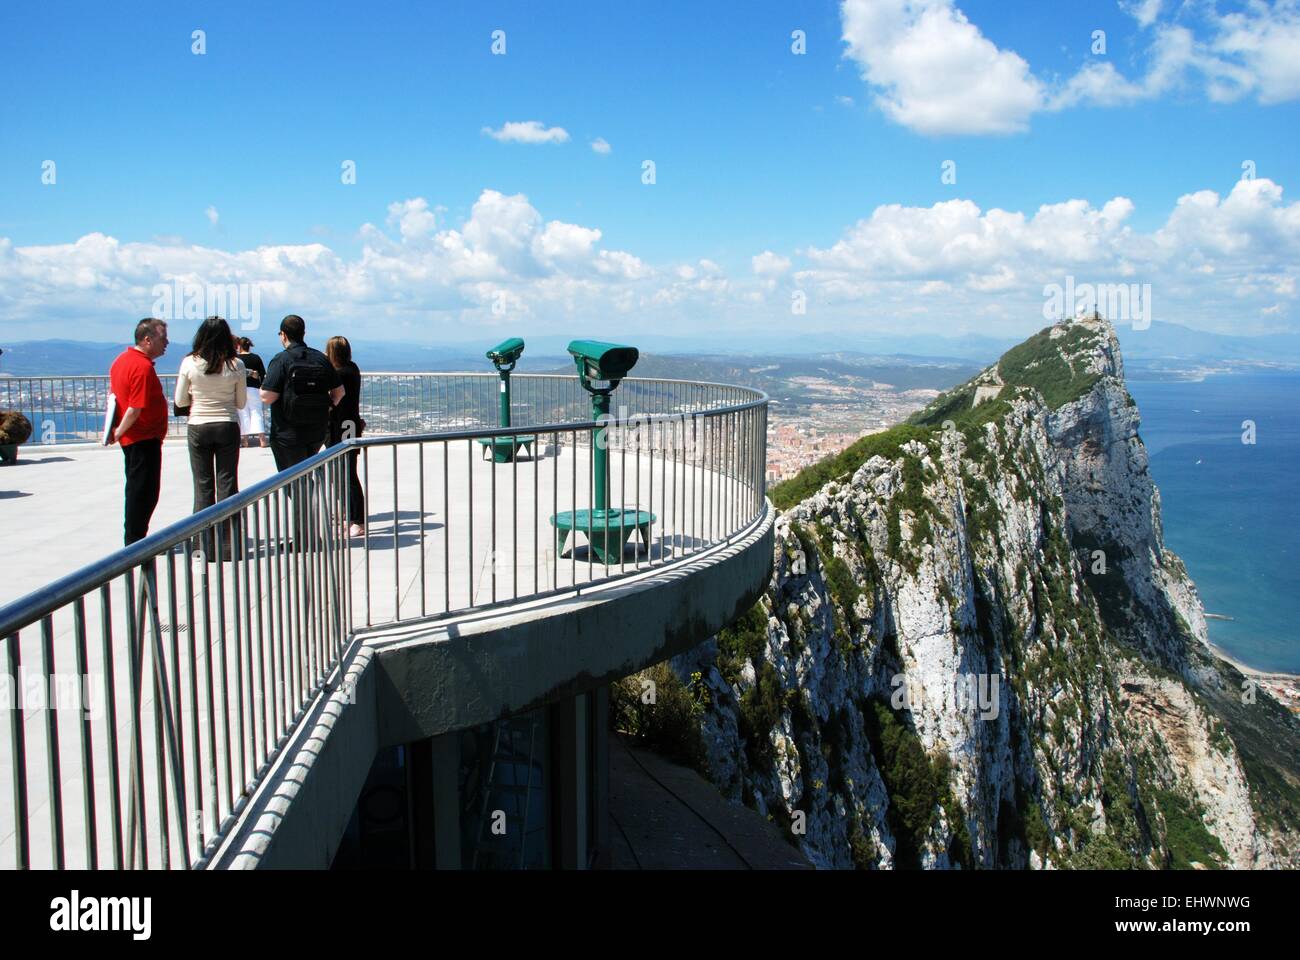 Les touristes sur la plate-forme d'observation avec la roche et le littoral espagnol à l'arrière, Gibraltar, Royaume-Uni, Europe de l'Ouest. Banque D'Images